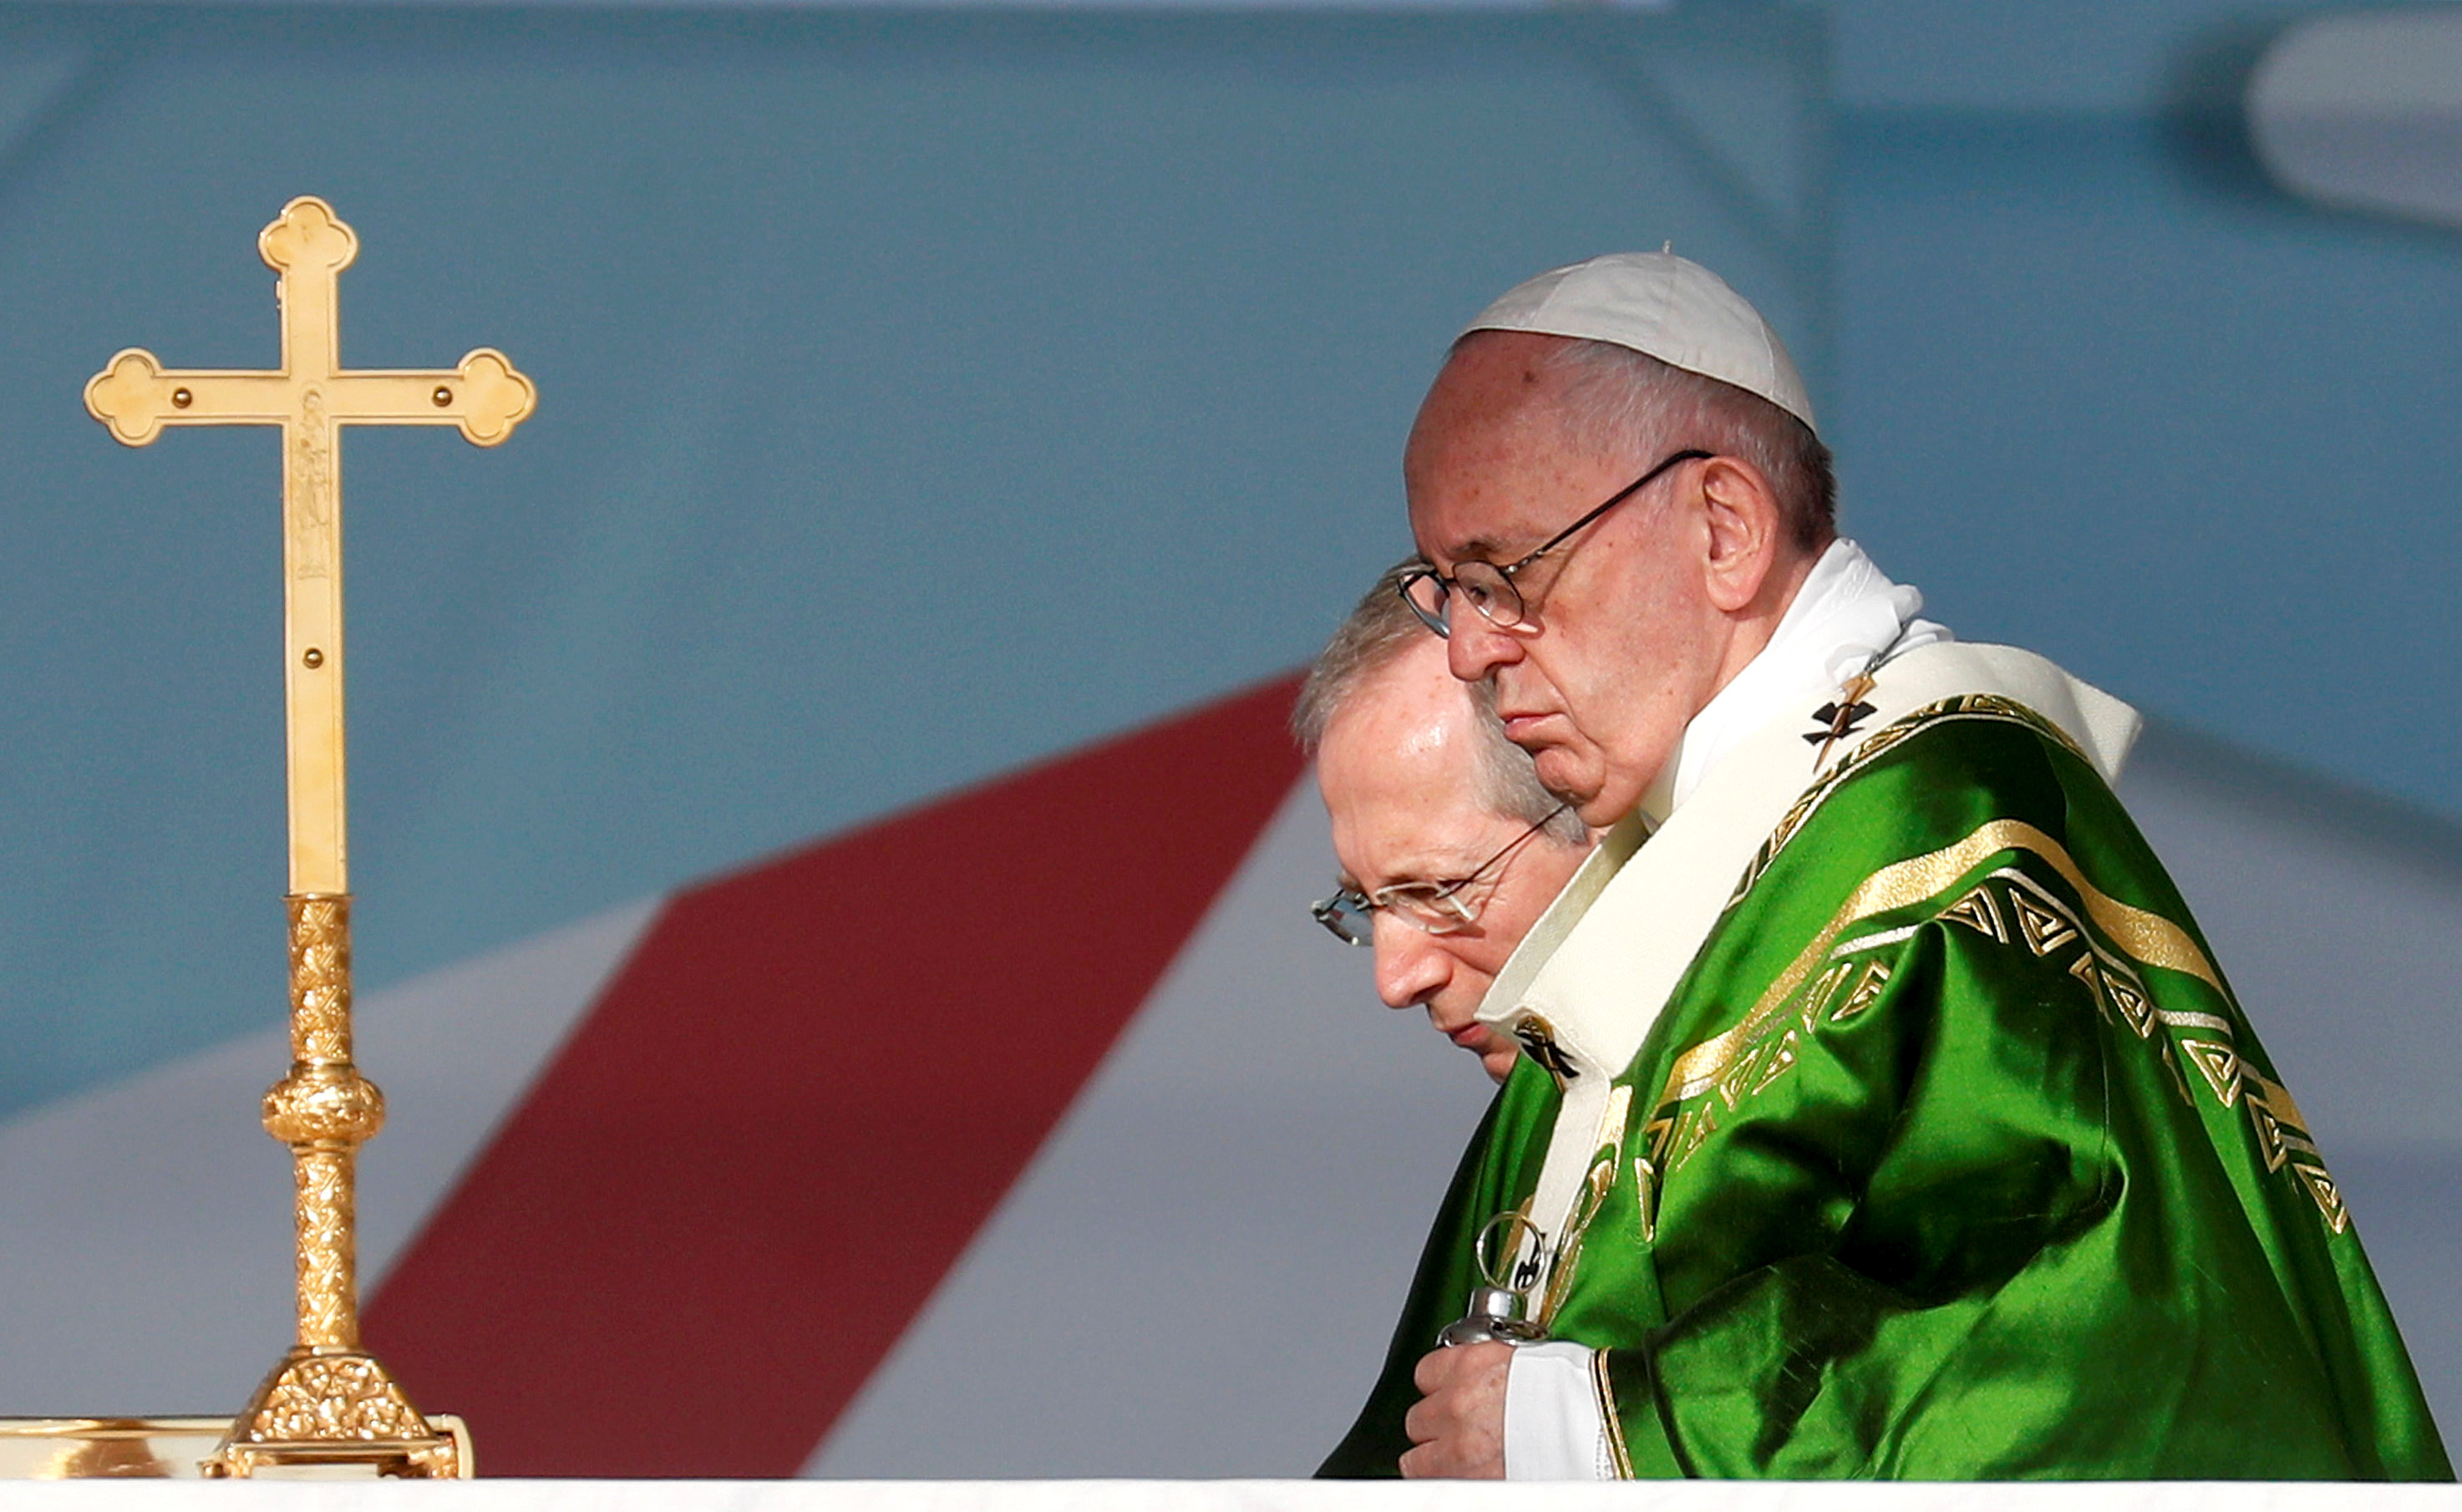 El papa Francisco pide solución justa y pacífica para crisis en Venezuela